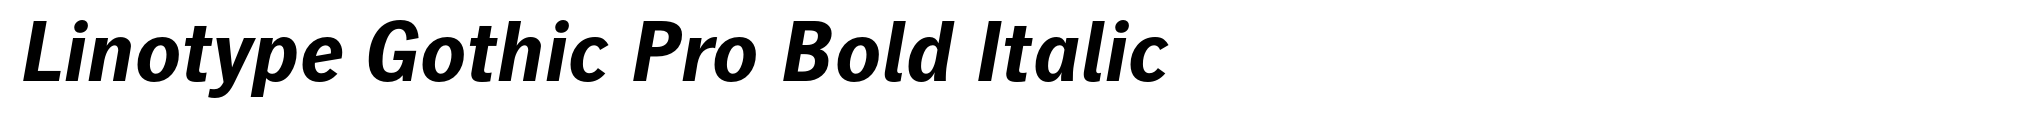 Linotype Gothic Pro Bold Italic image